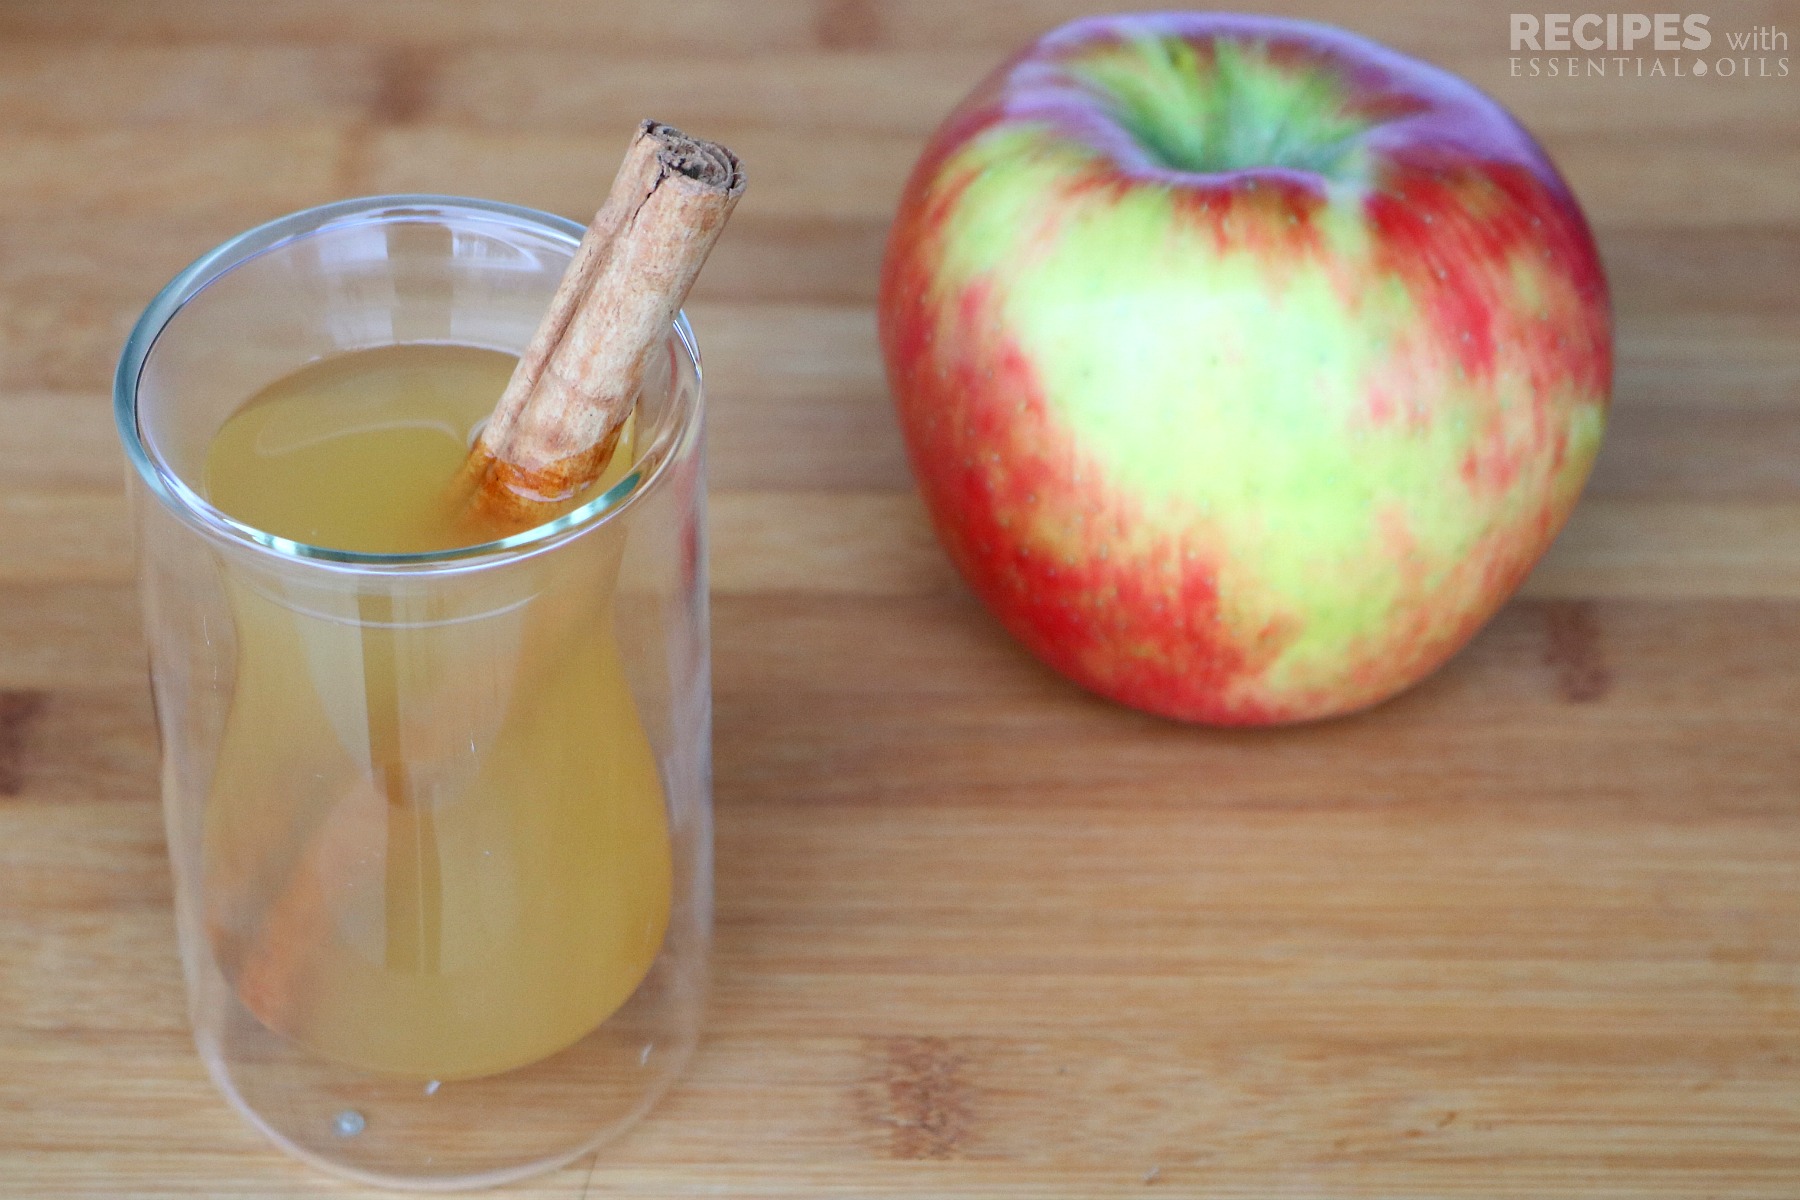 Spiced Apple Cider Recipe from RecipeswithEssentialOils.com